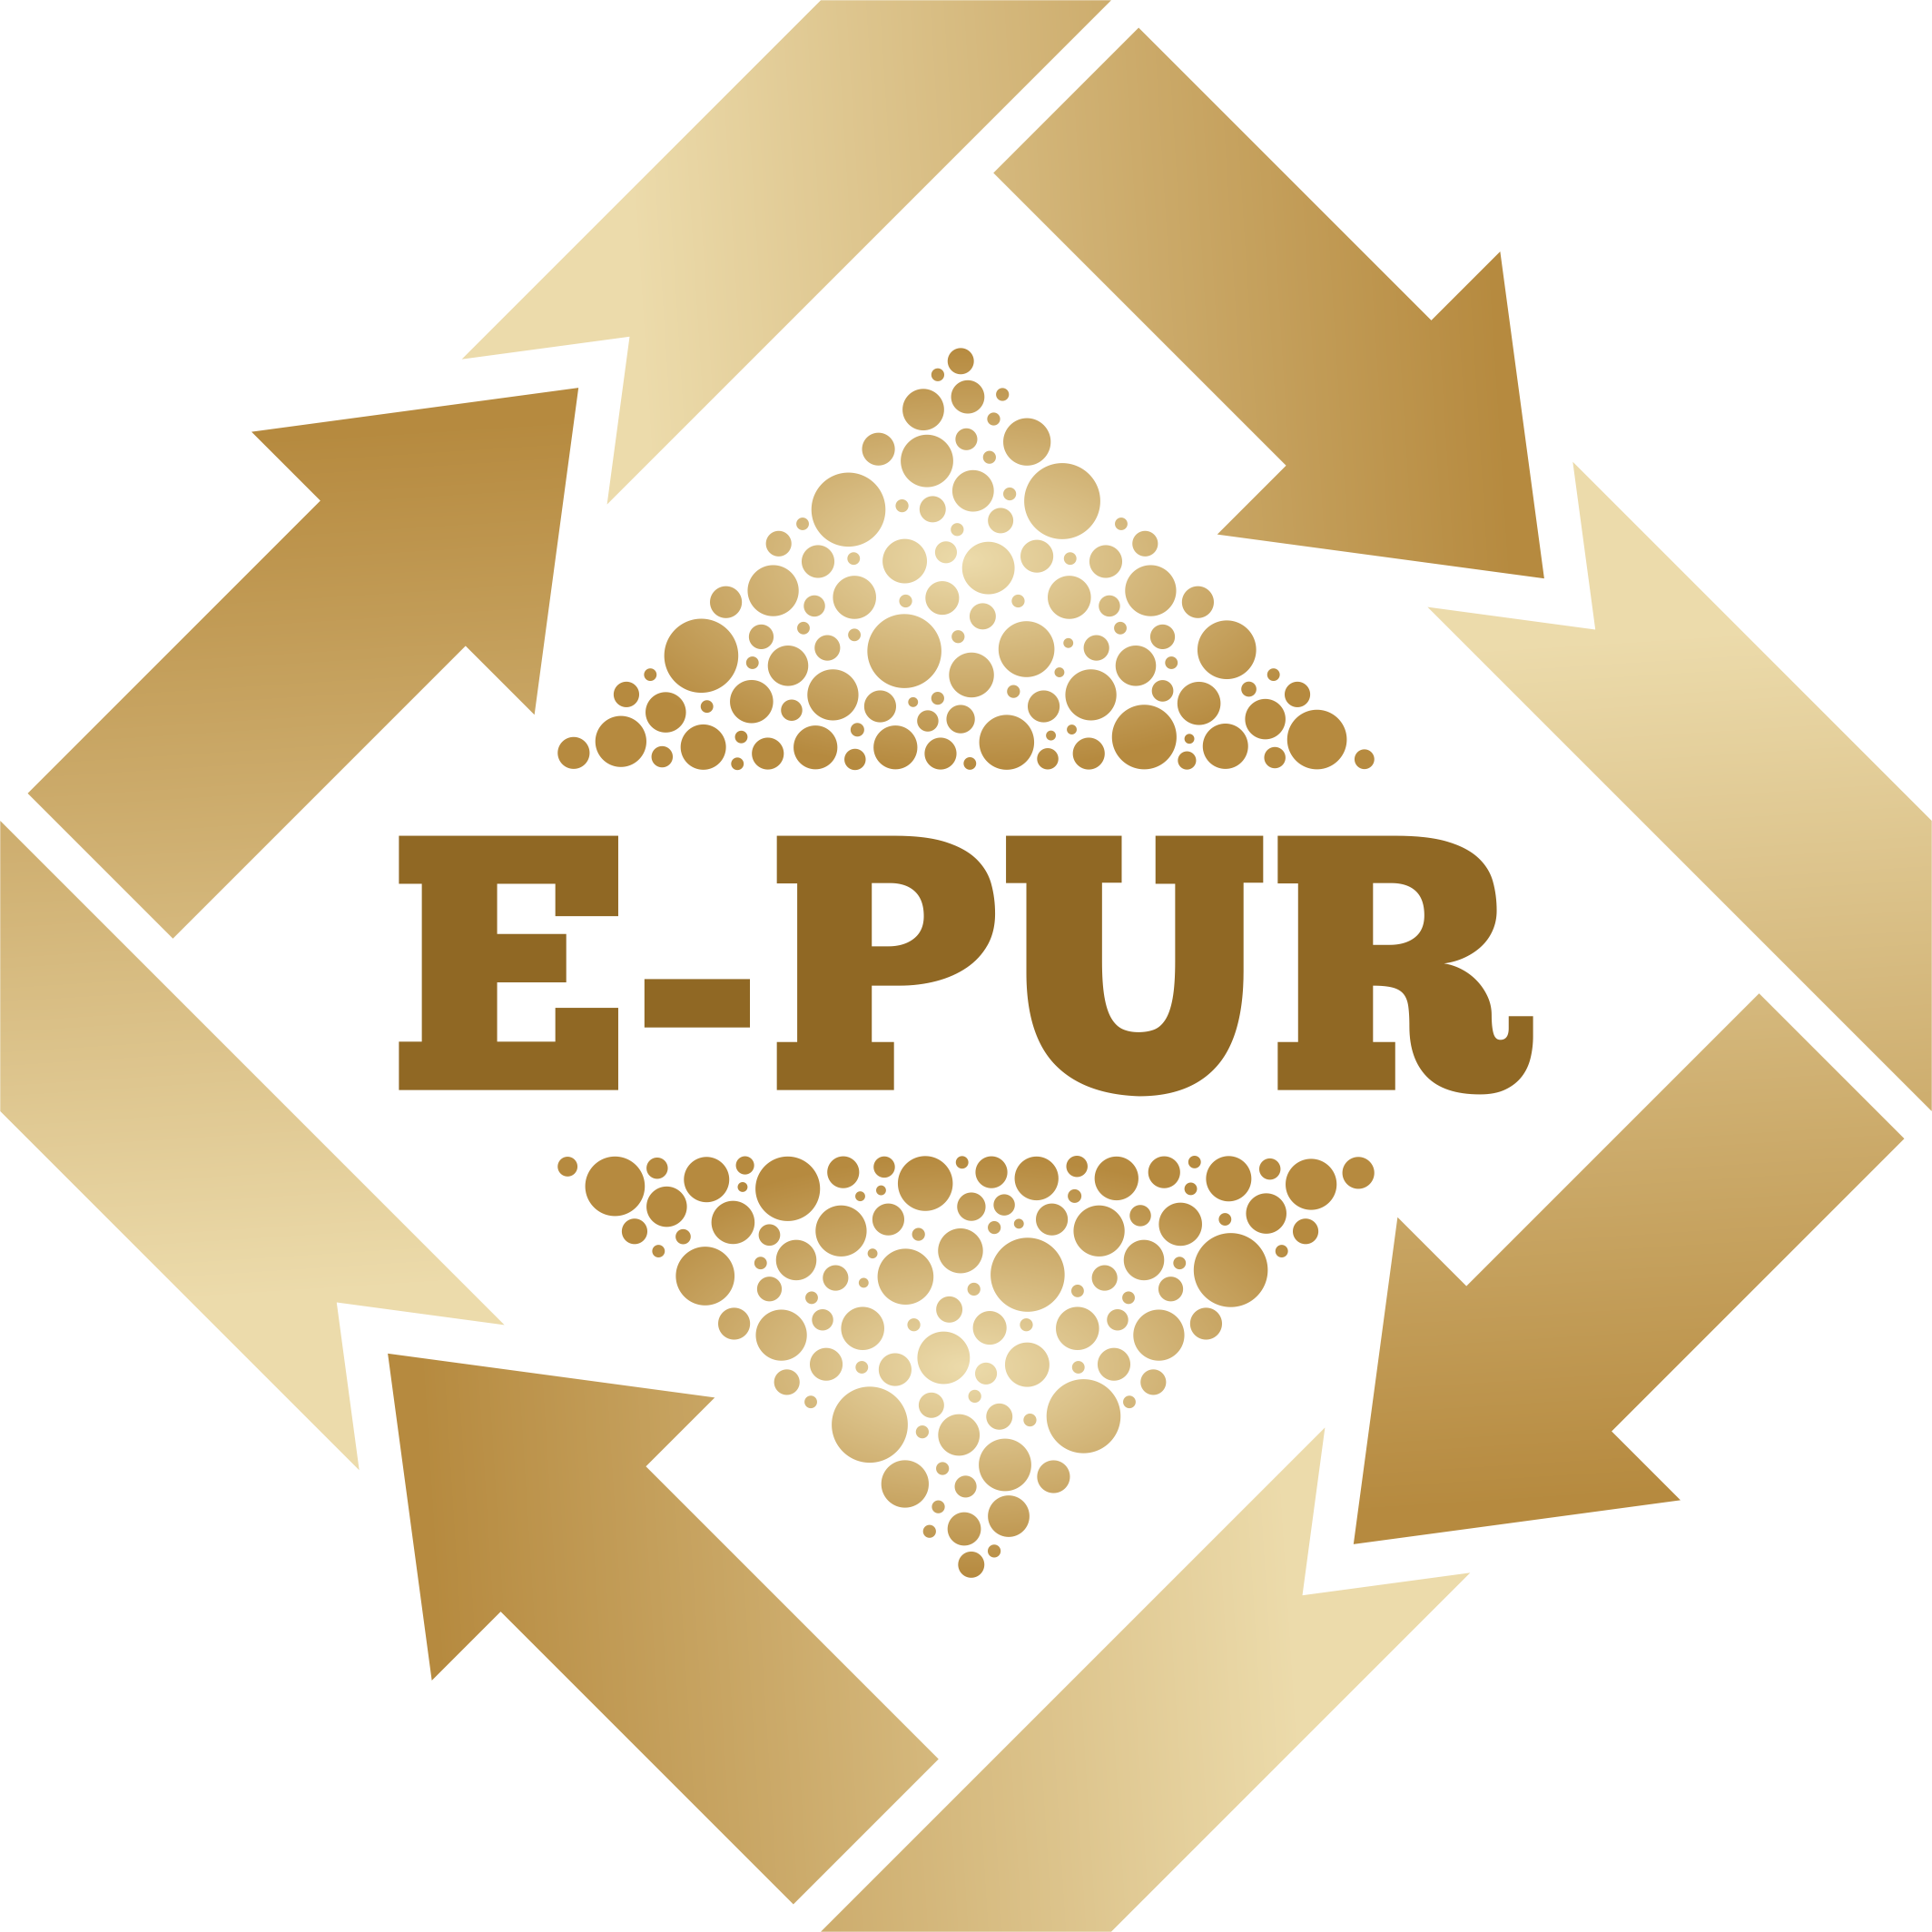 E-PUR